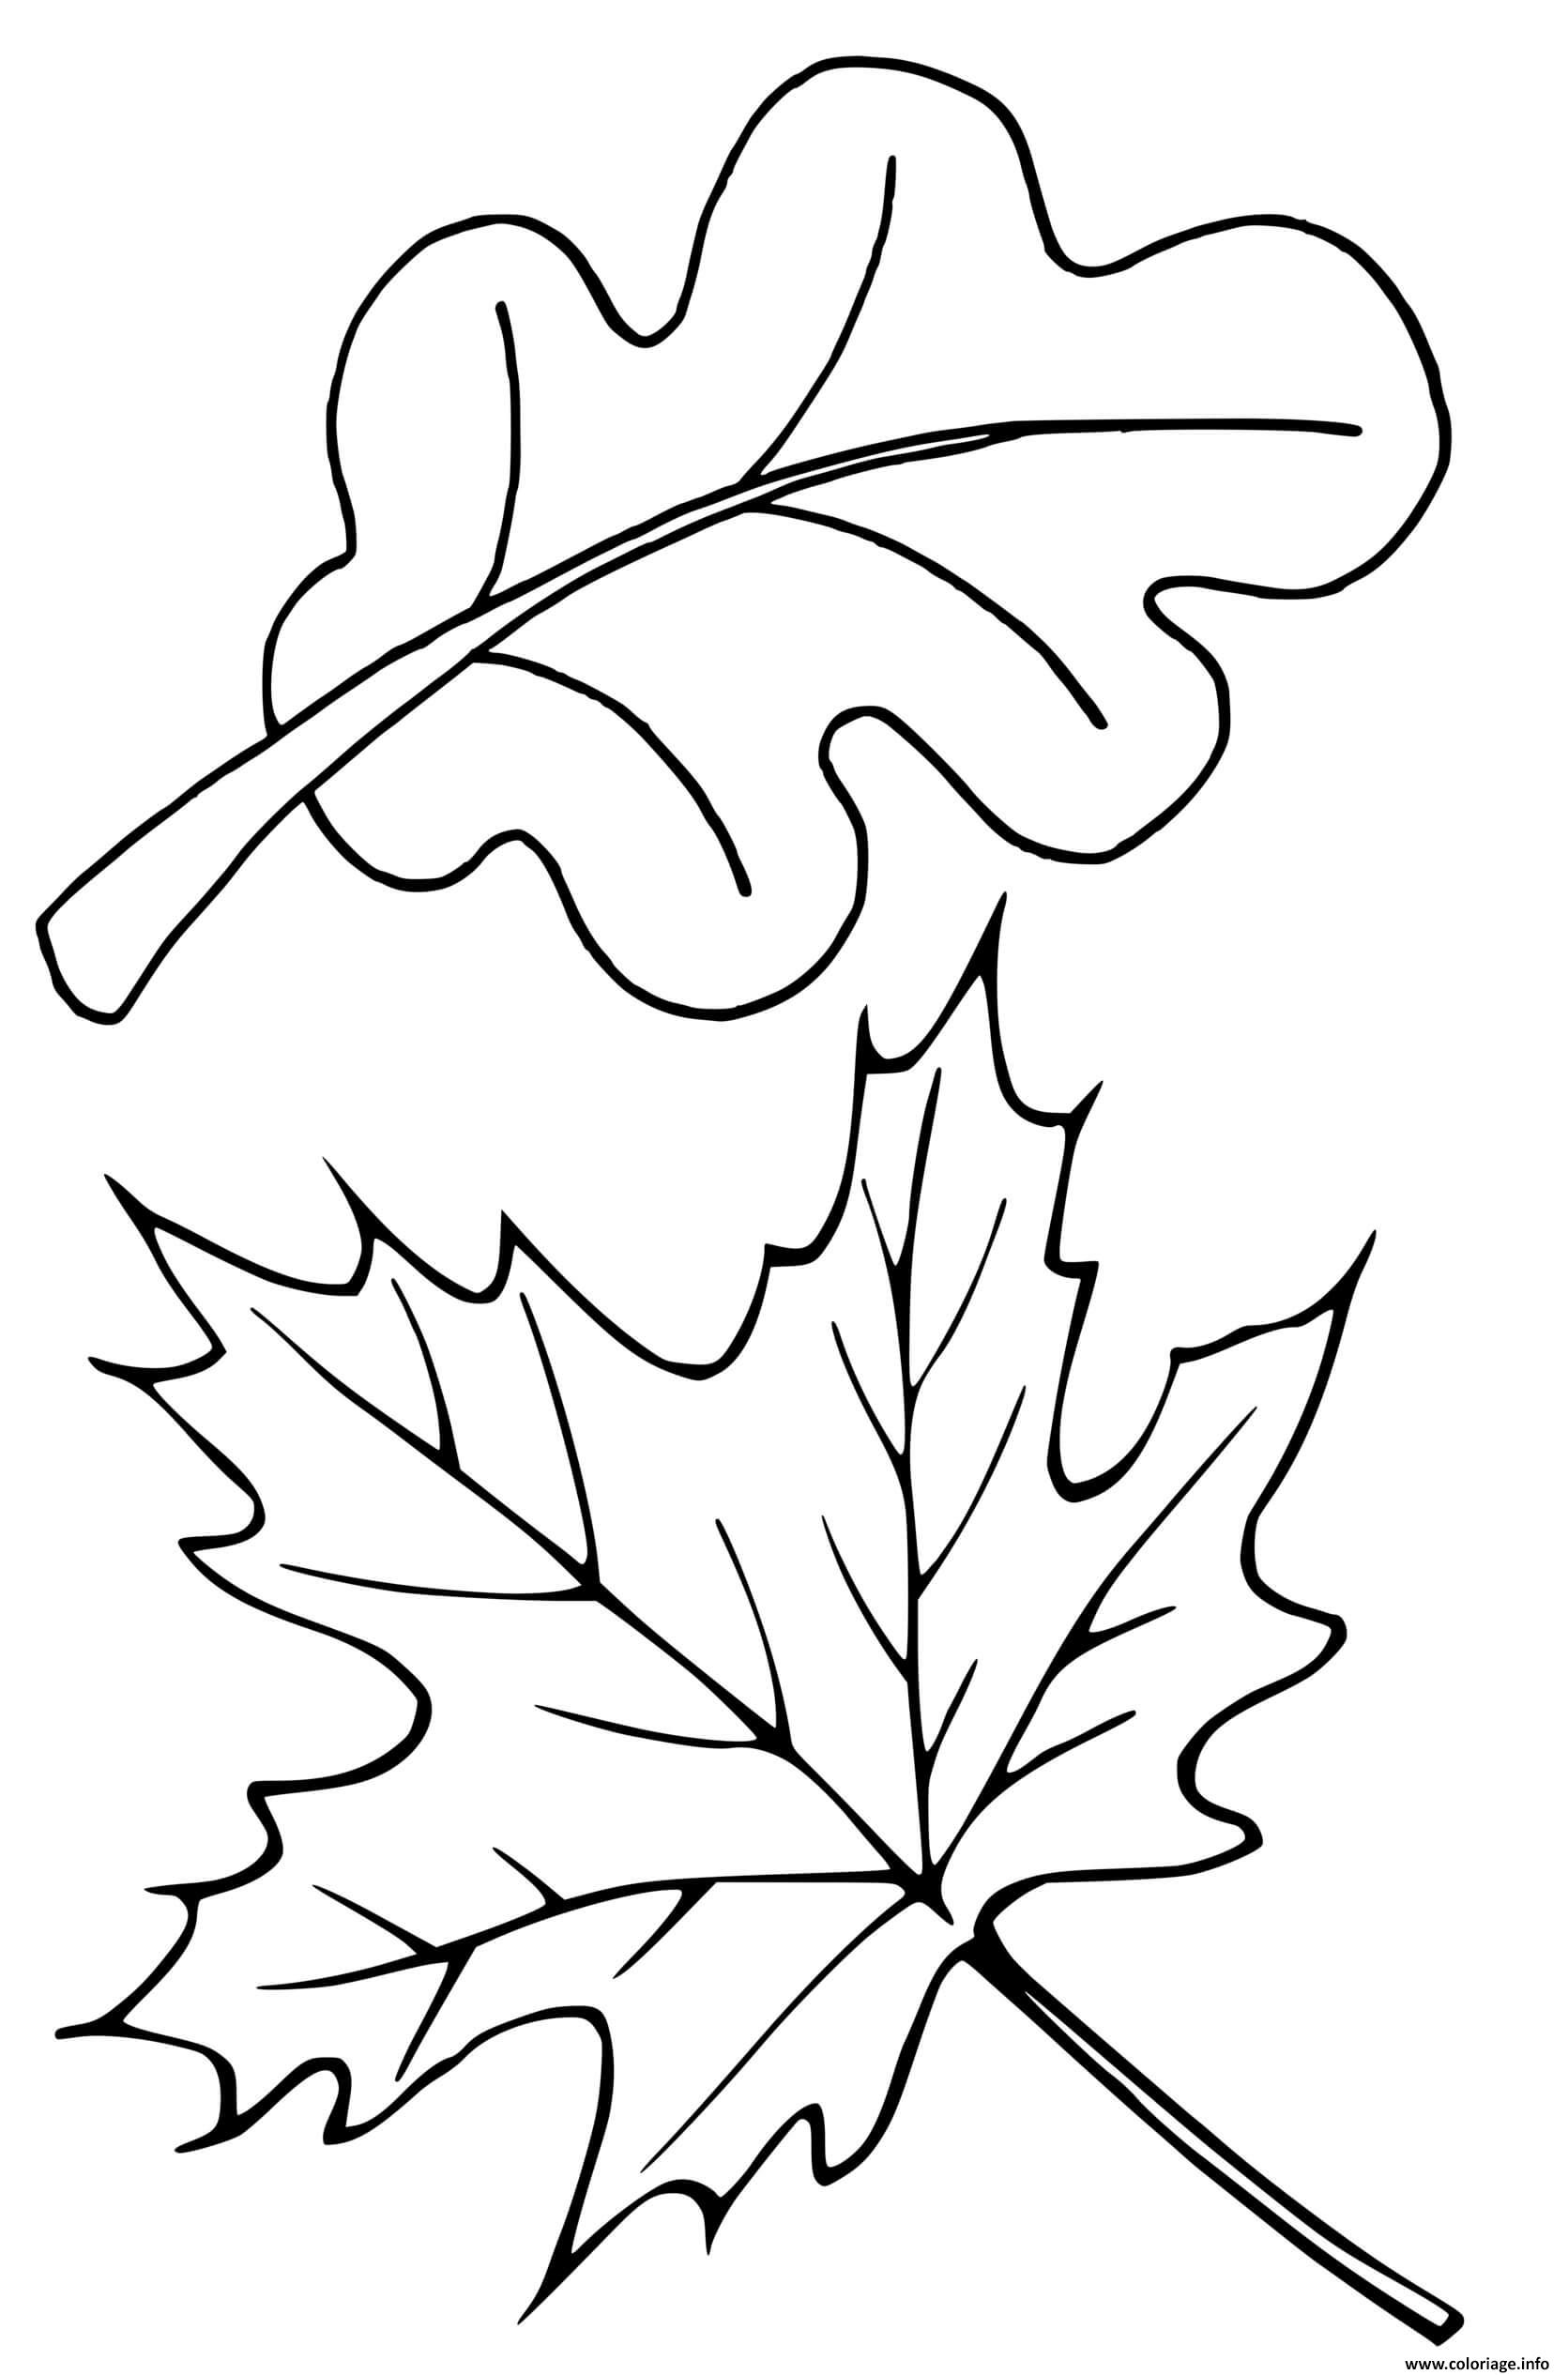 Dessin feuilles arbre erable chene Coloriage Gratuit à Imprimer